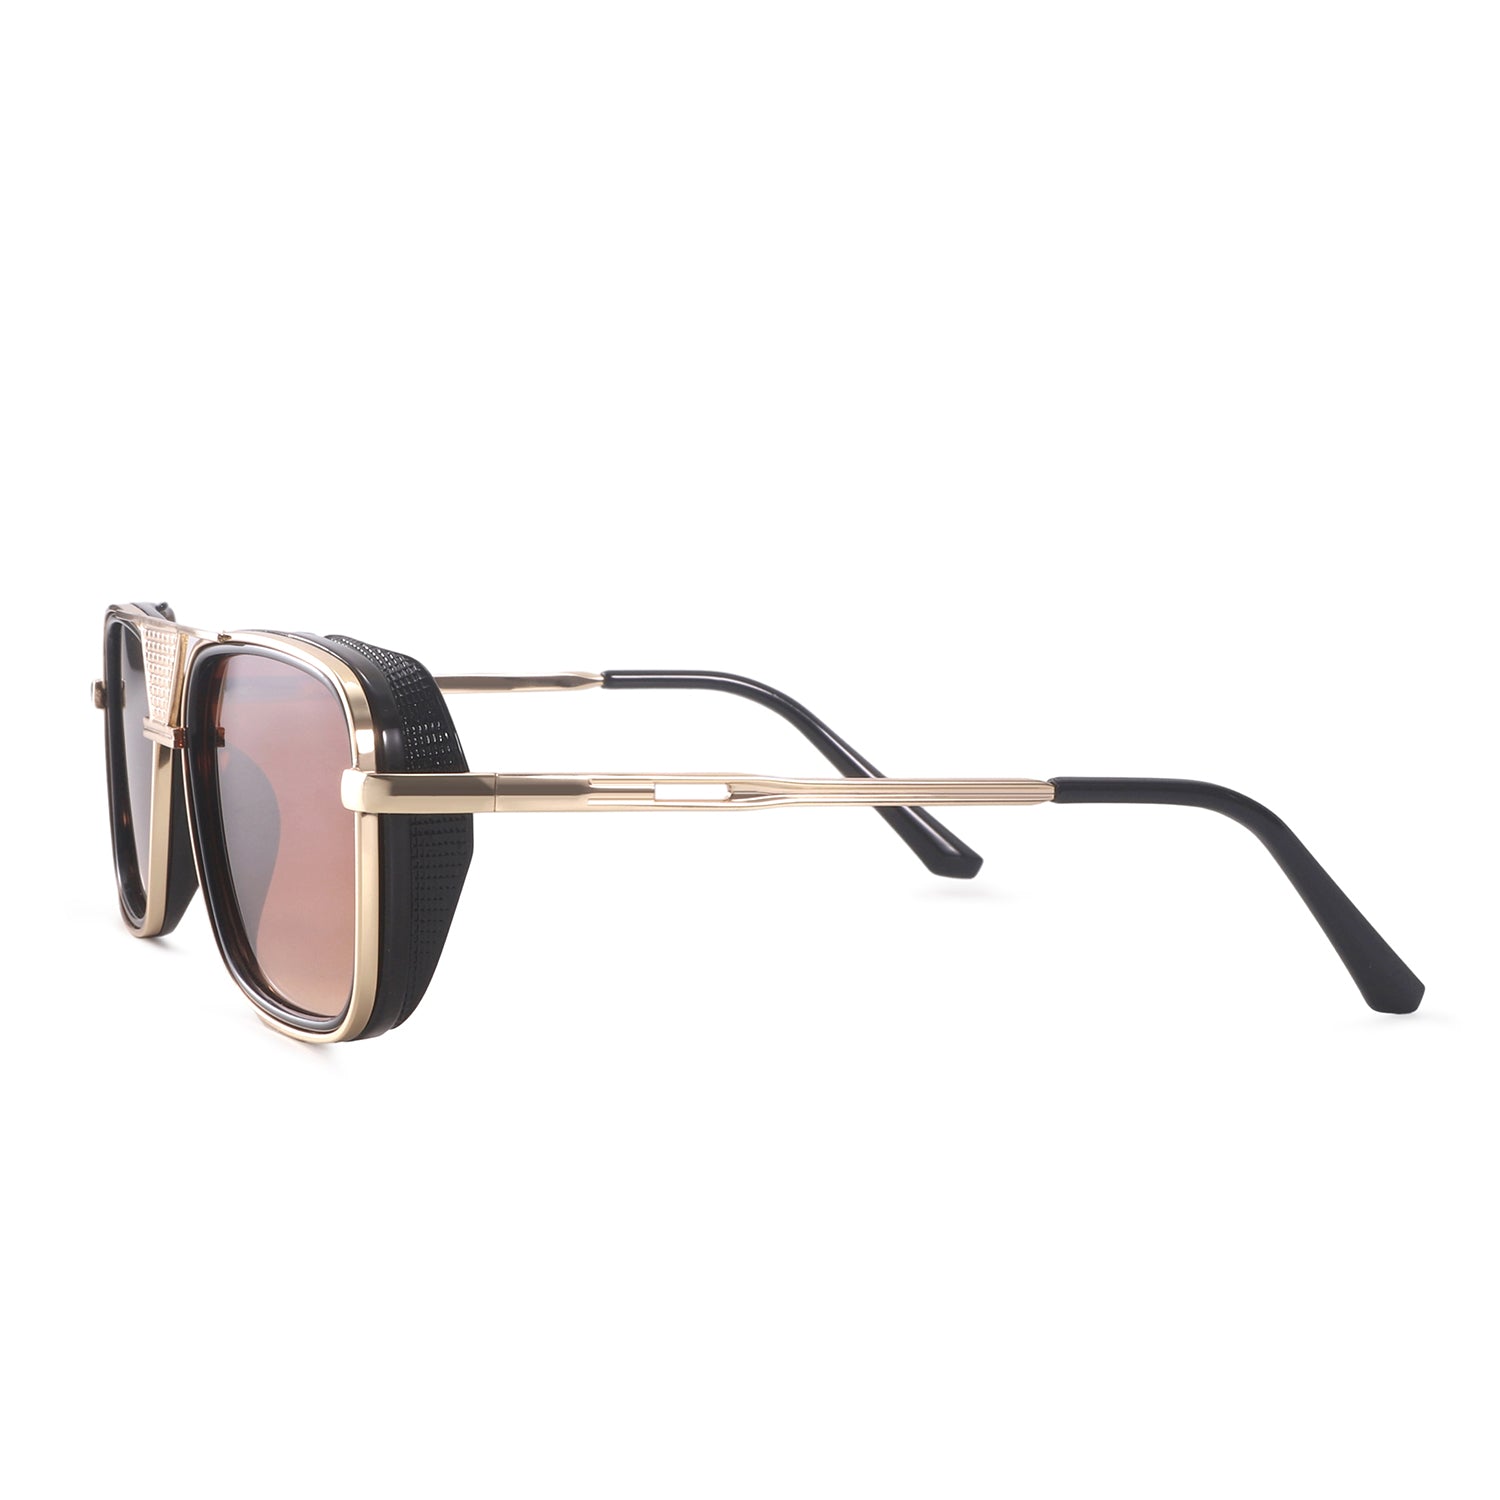 Aviator Black Sunglasses For Men